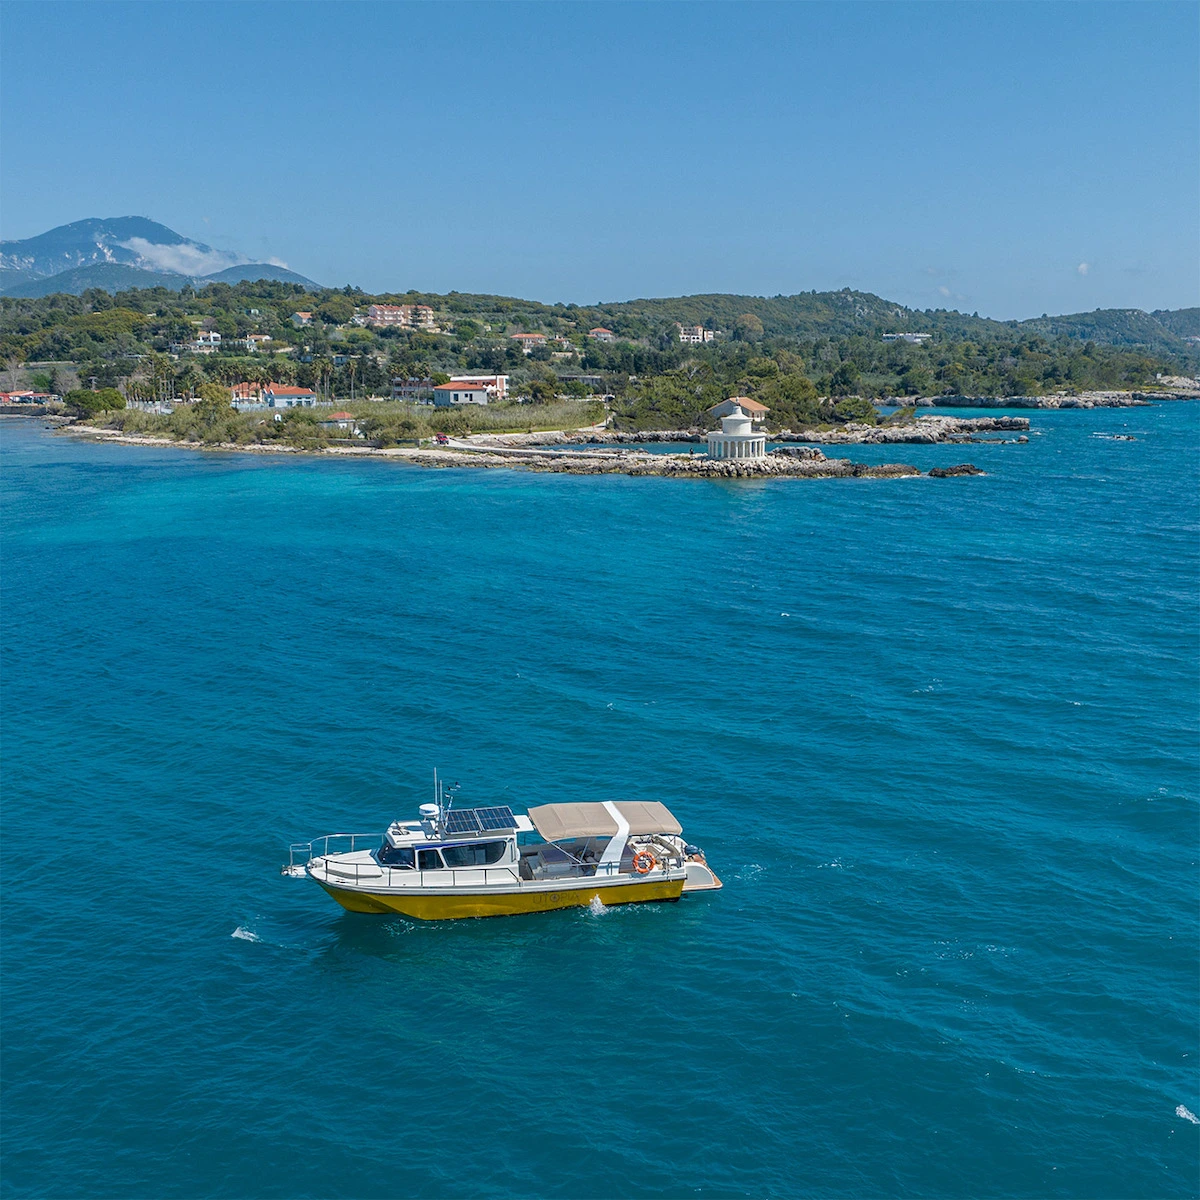 Daily Cruises From Argostoli Kefalonia - Kefalonia Daily Cruises - Daily Cruises from Argostoli to White Rocks Beach and Vardianoi Island